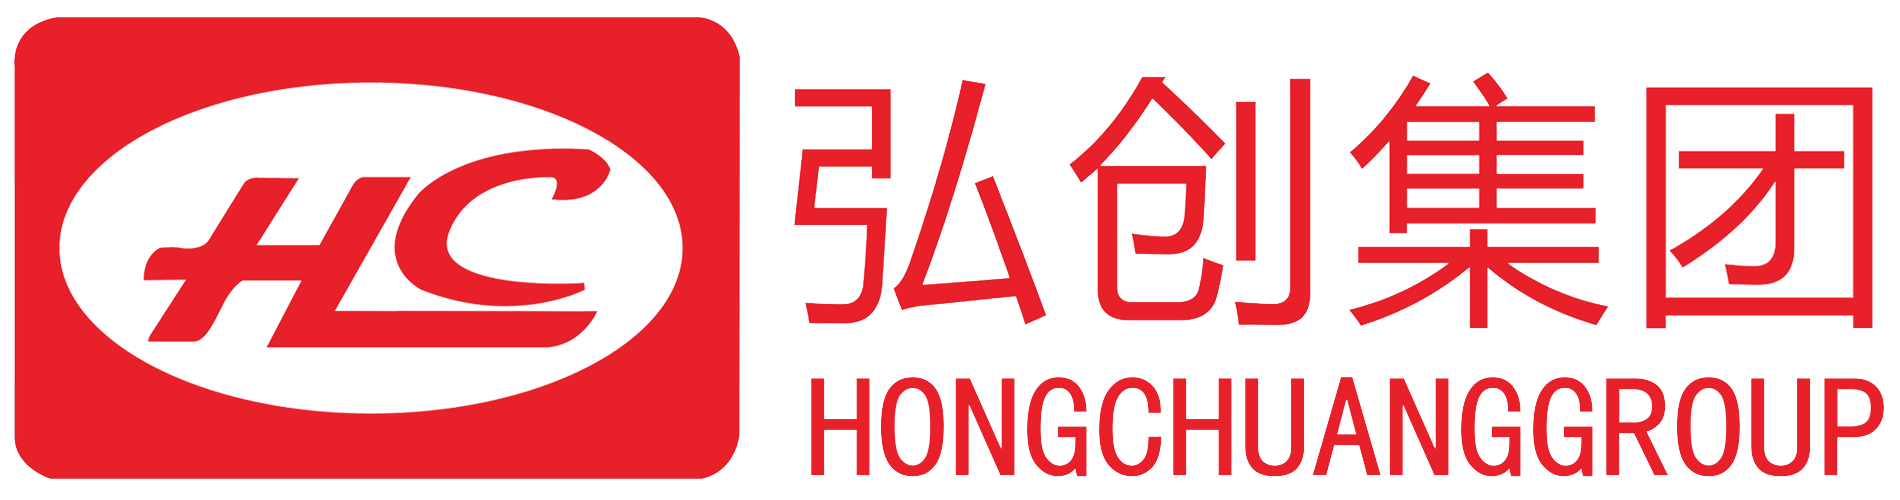 logo,弘创集团,弘创,HC,hc